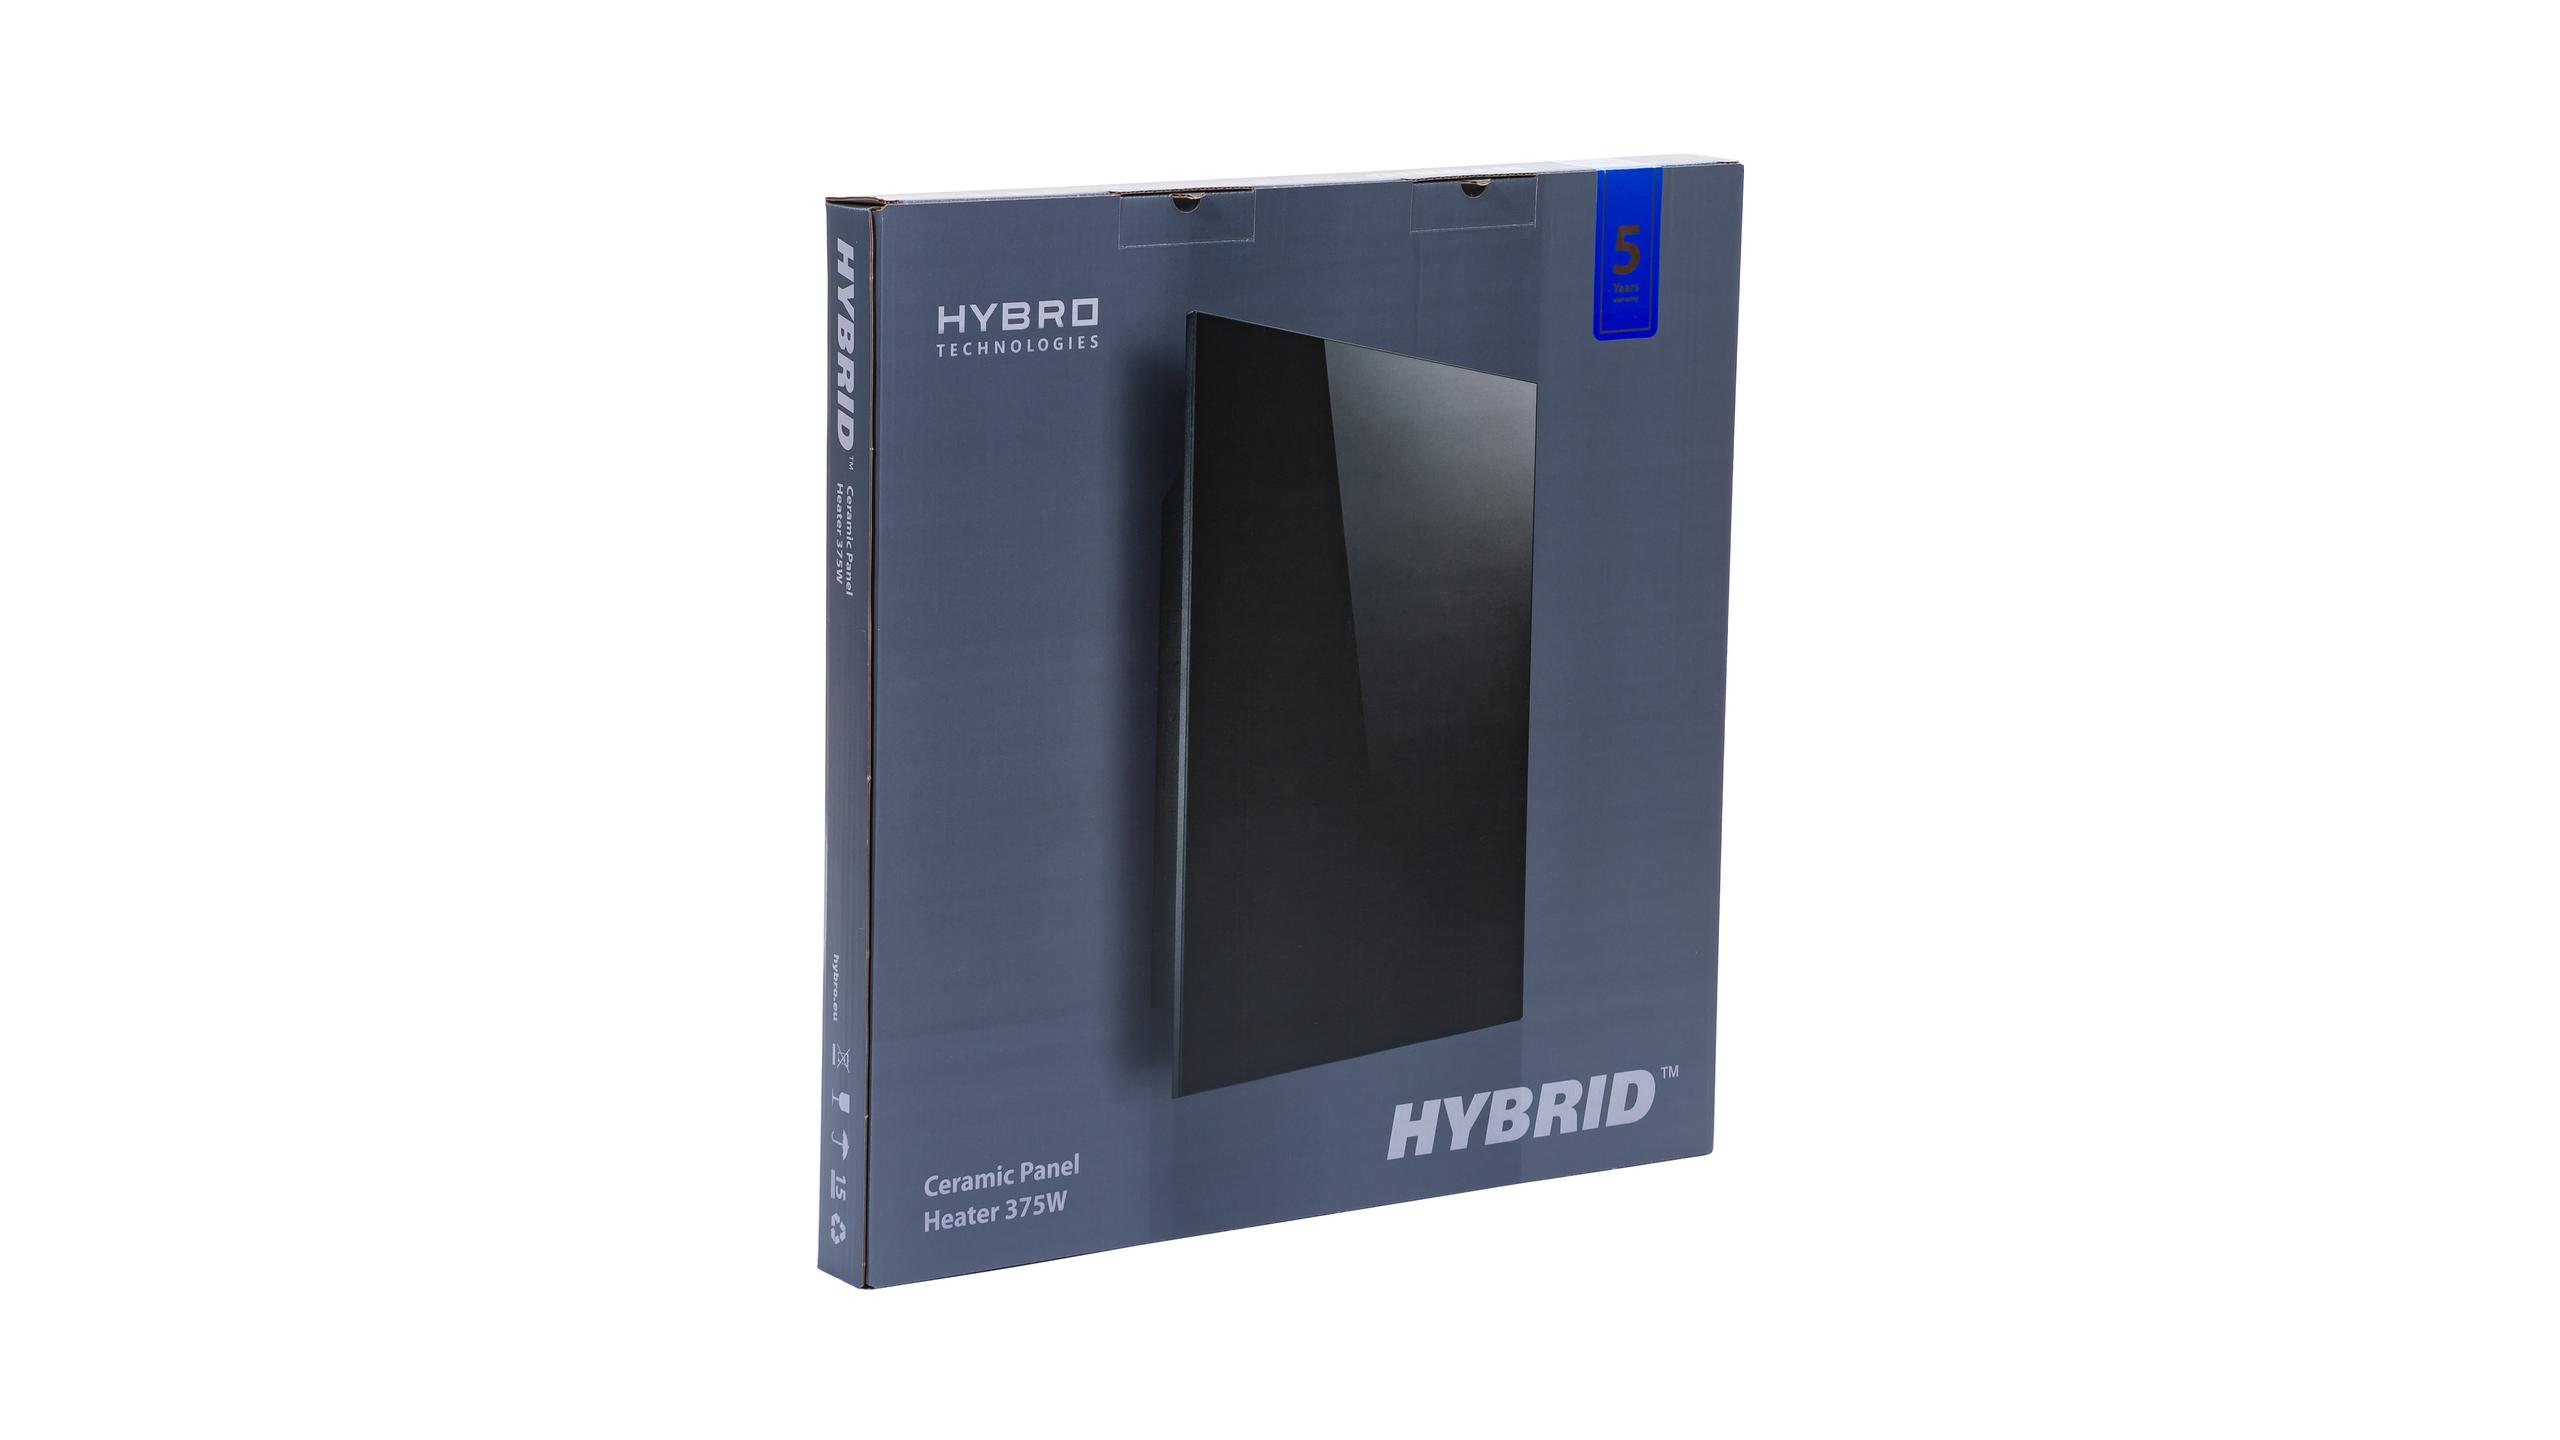 HYBRID 375W (nero)